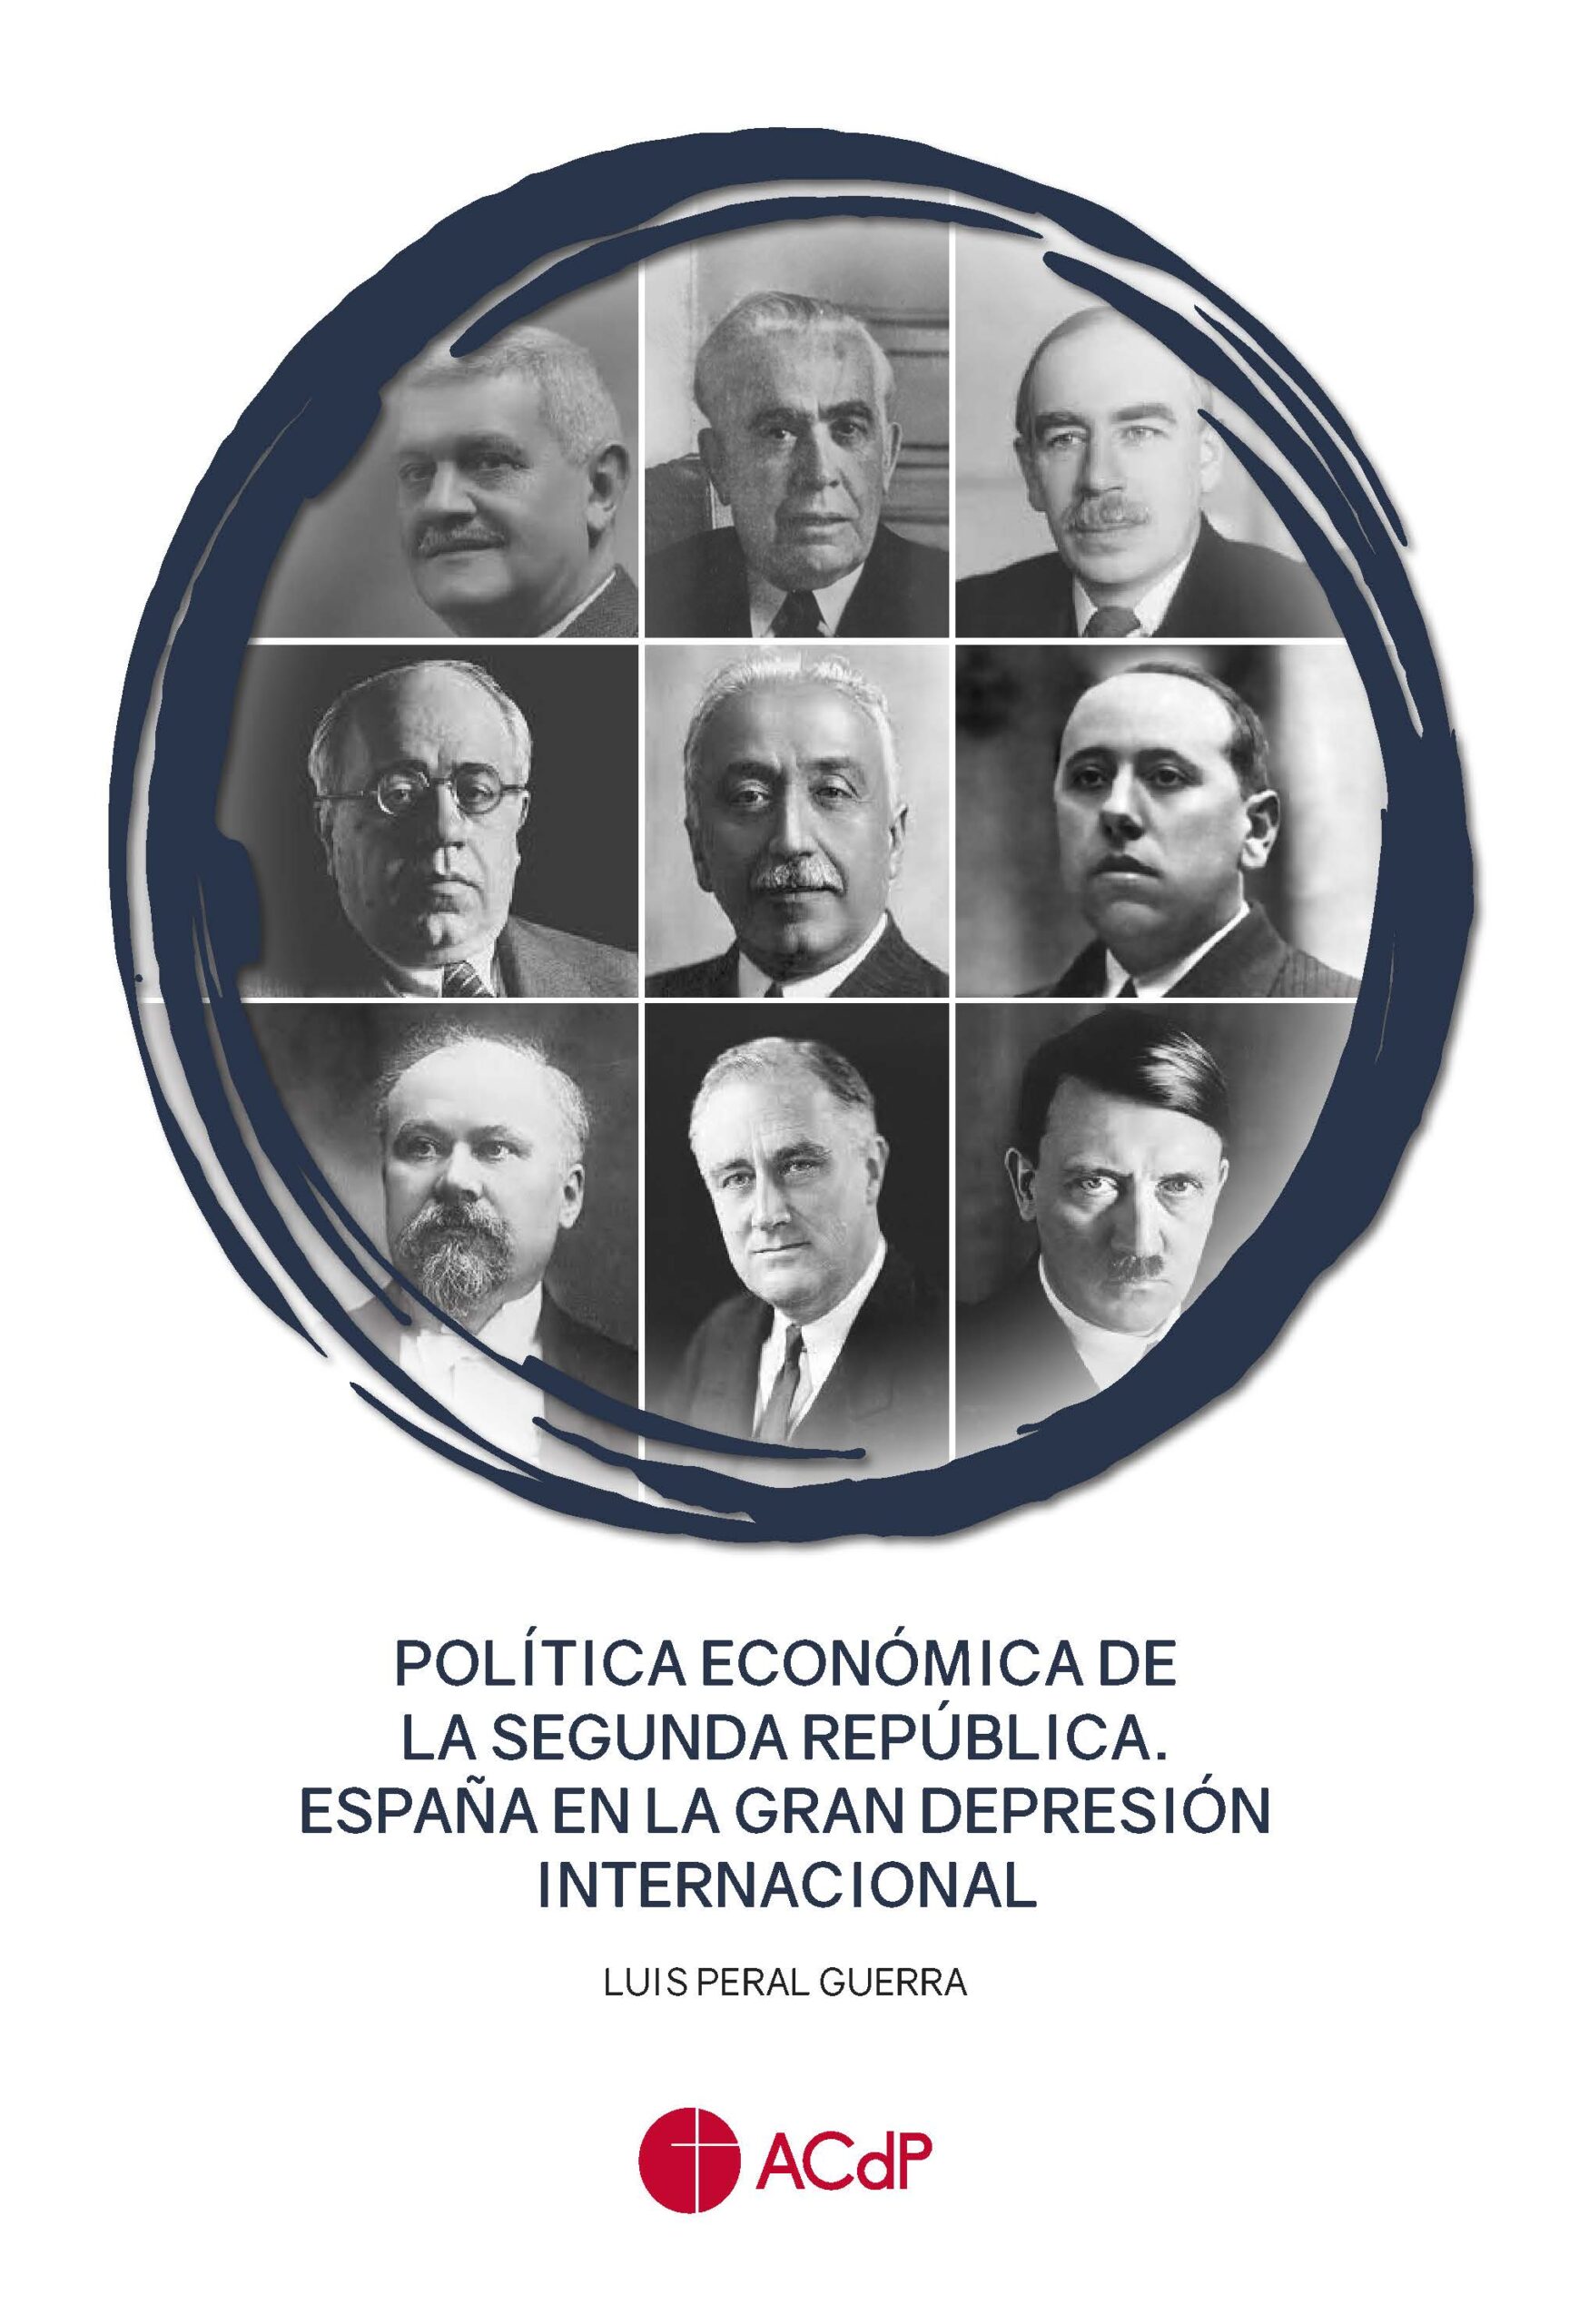 POLITICA ECONOMICA DE LA SEGUNDA REPUBLICA. ESPAÑA EN LA GRAN DEPRESION INTERNACIONAL